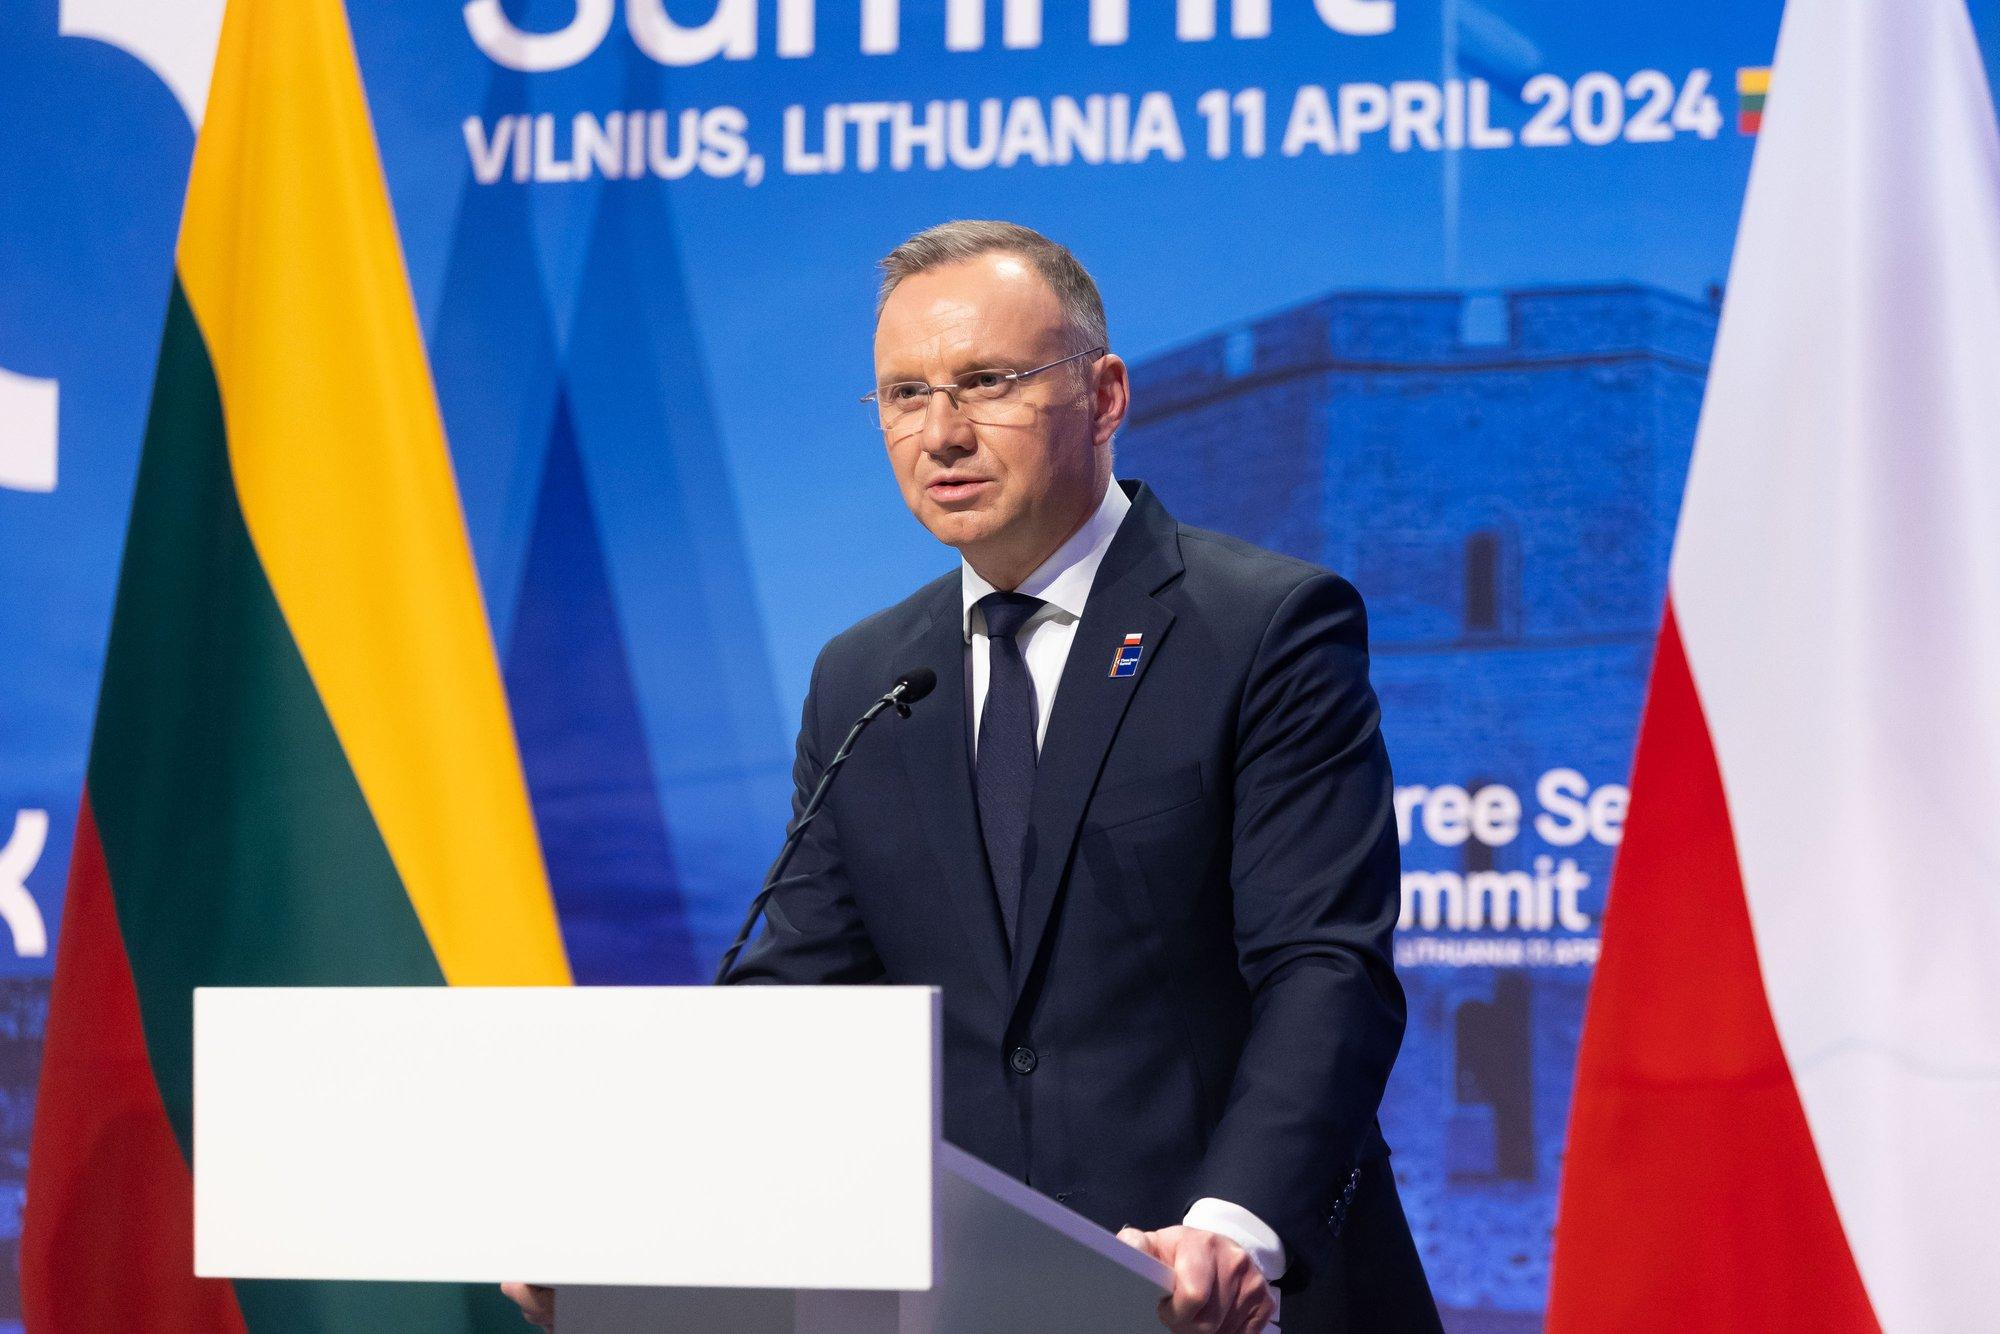 Президент Литвы о возможности размещения ядерного оружия в Польше: это был бы элемент системы сдерживания